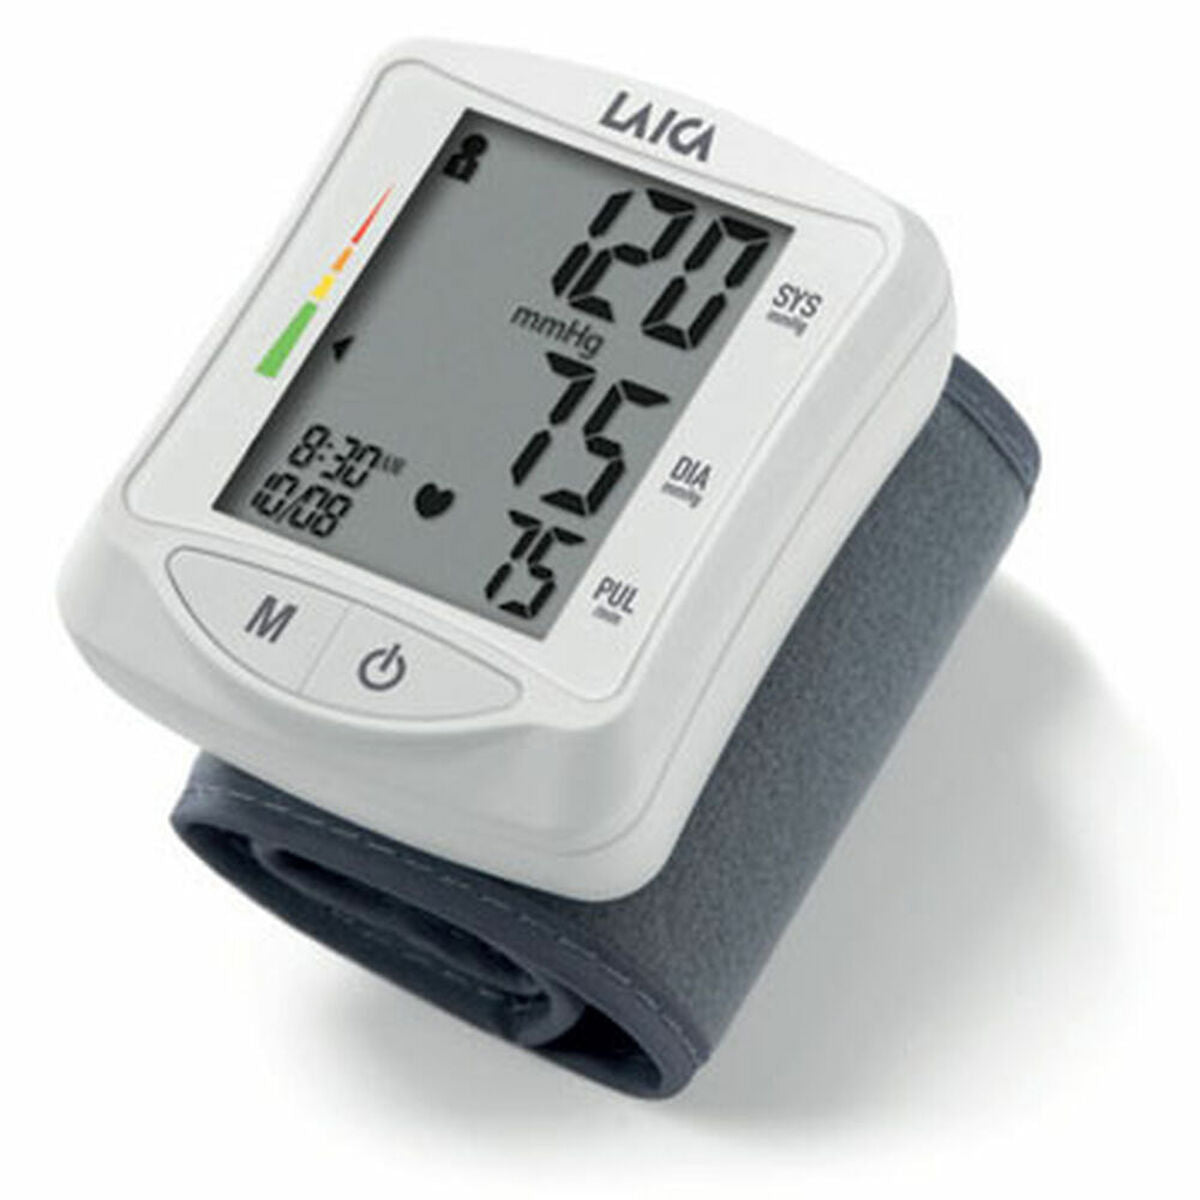 Wrist Blood Pressure Monitor LAICA BM1006 White